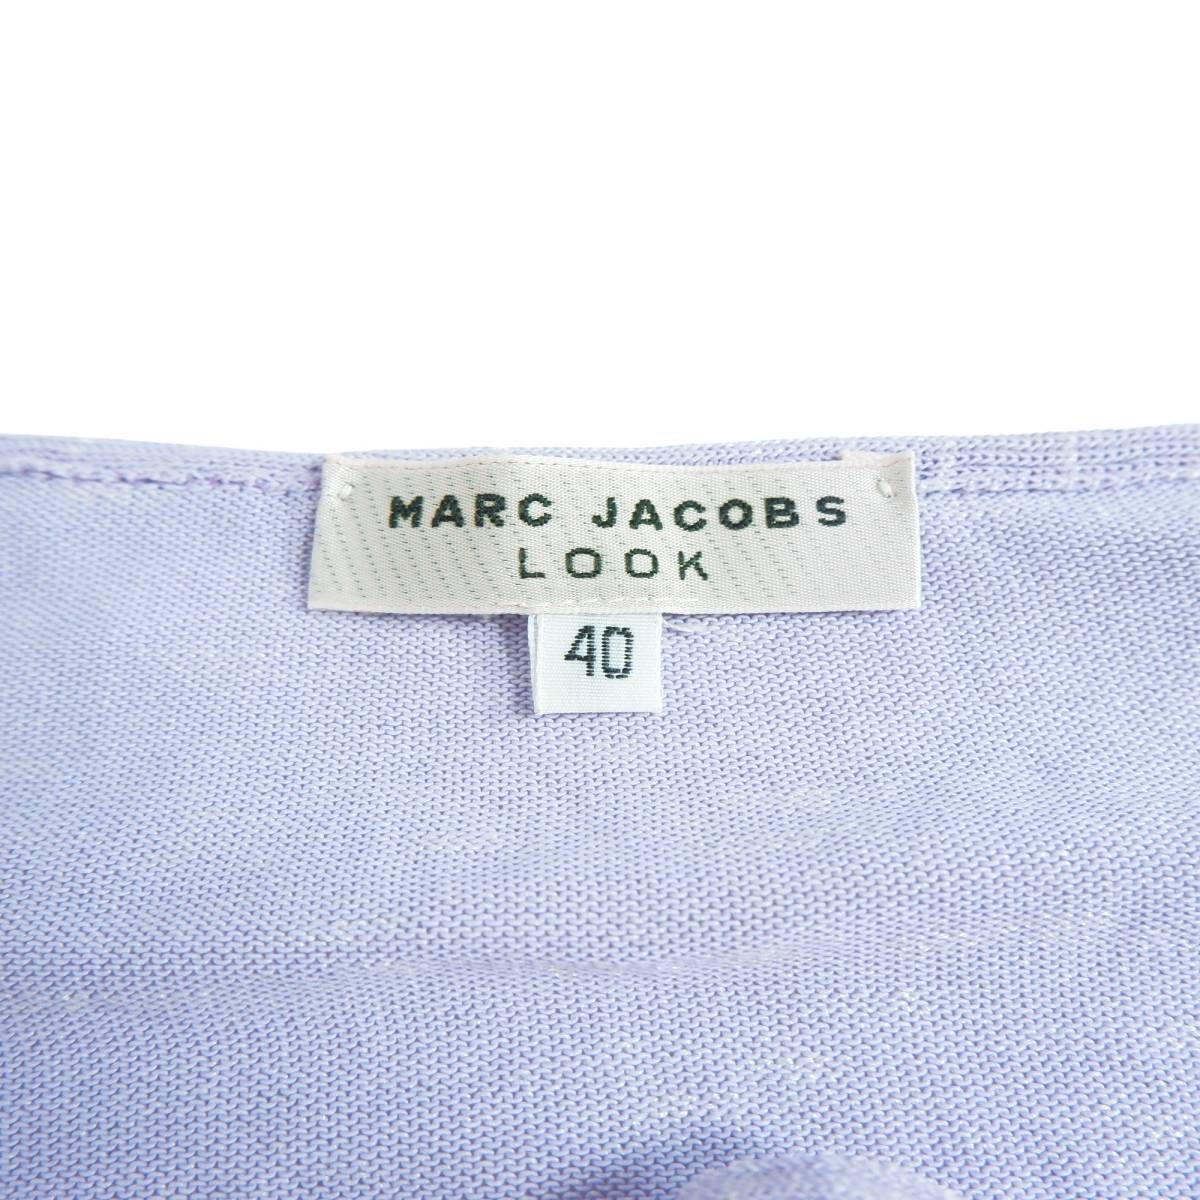 ◆良品 イタリア製◆ MARC JACOBS LOOK マークジェイコブス 長袖 薄手 ニット セーター カットソー レディース 40 ◆送料無料◆ 1544A0_画像6